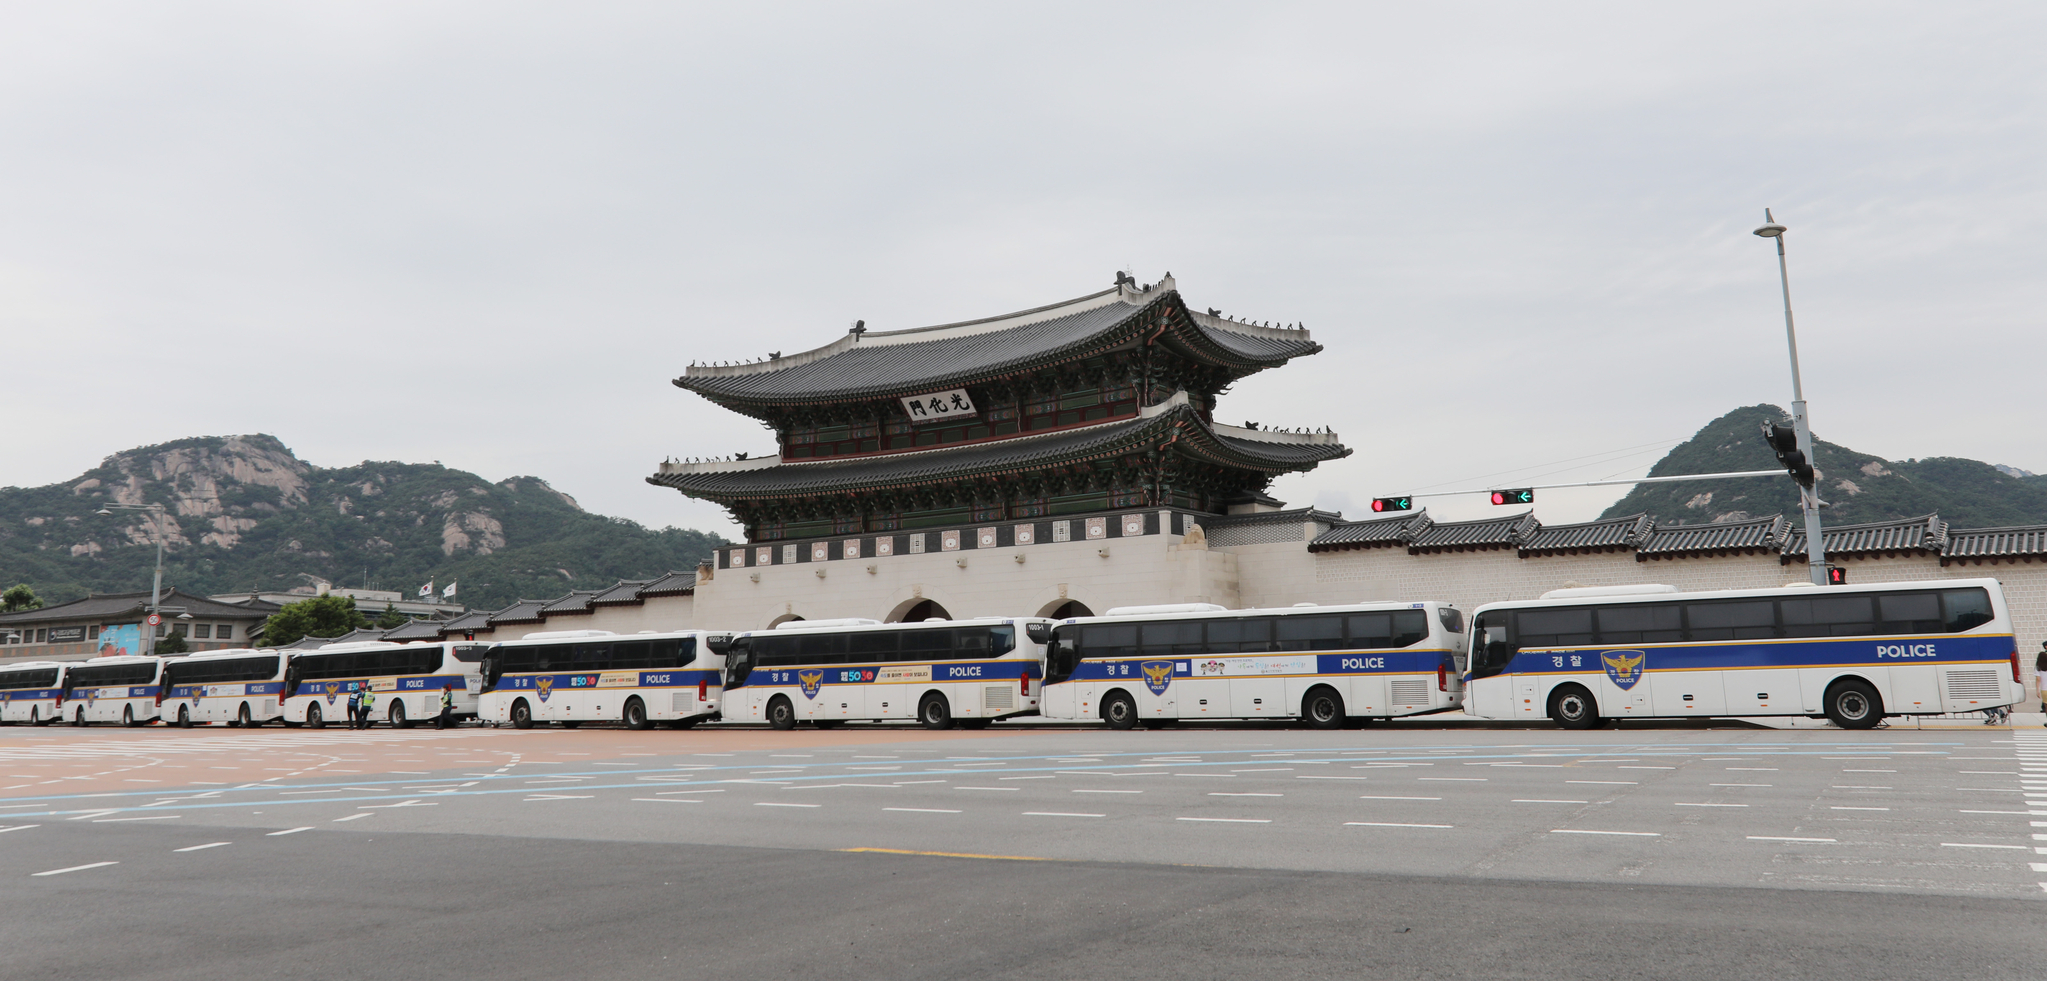 민주노총의 전국노동자대회가 예정된 3일 서울 광화문 앞으로 경찰 차벽이 설이되어 있다. 뉴스1 